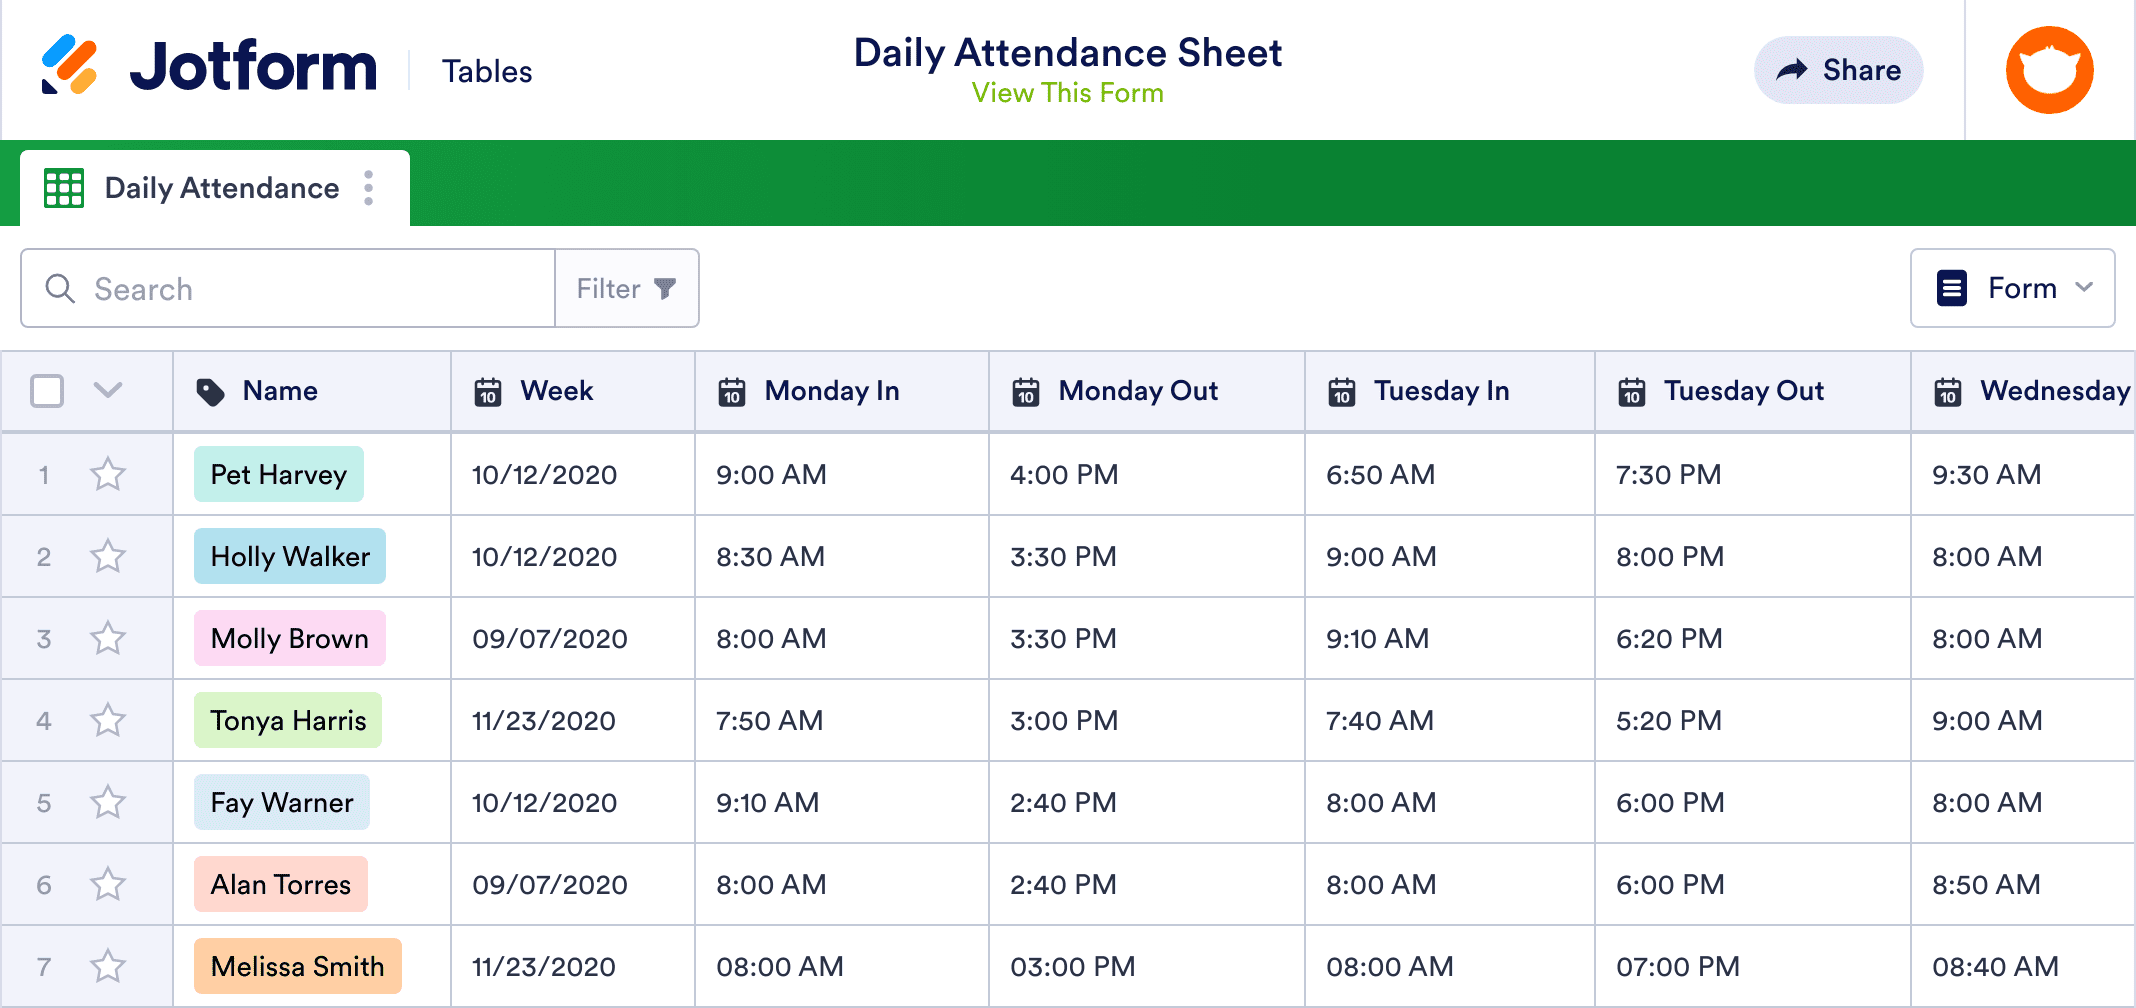 Daily Attendance Sheet